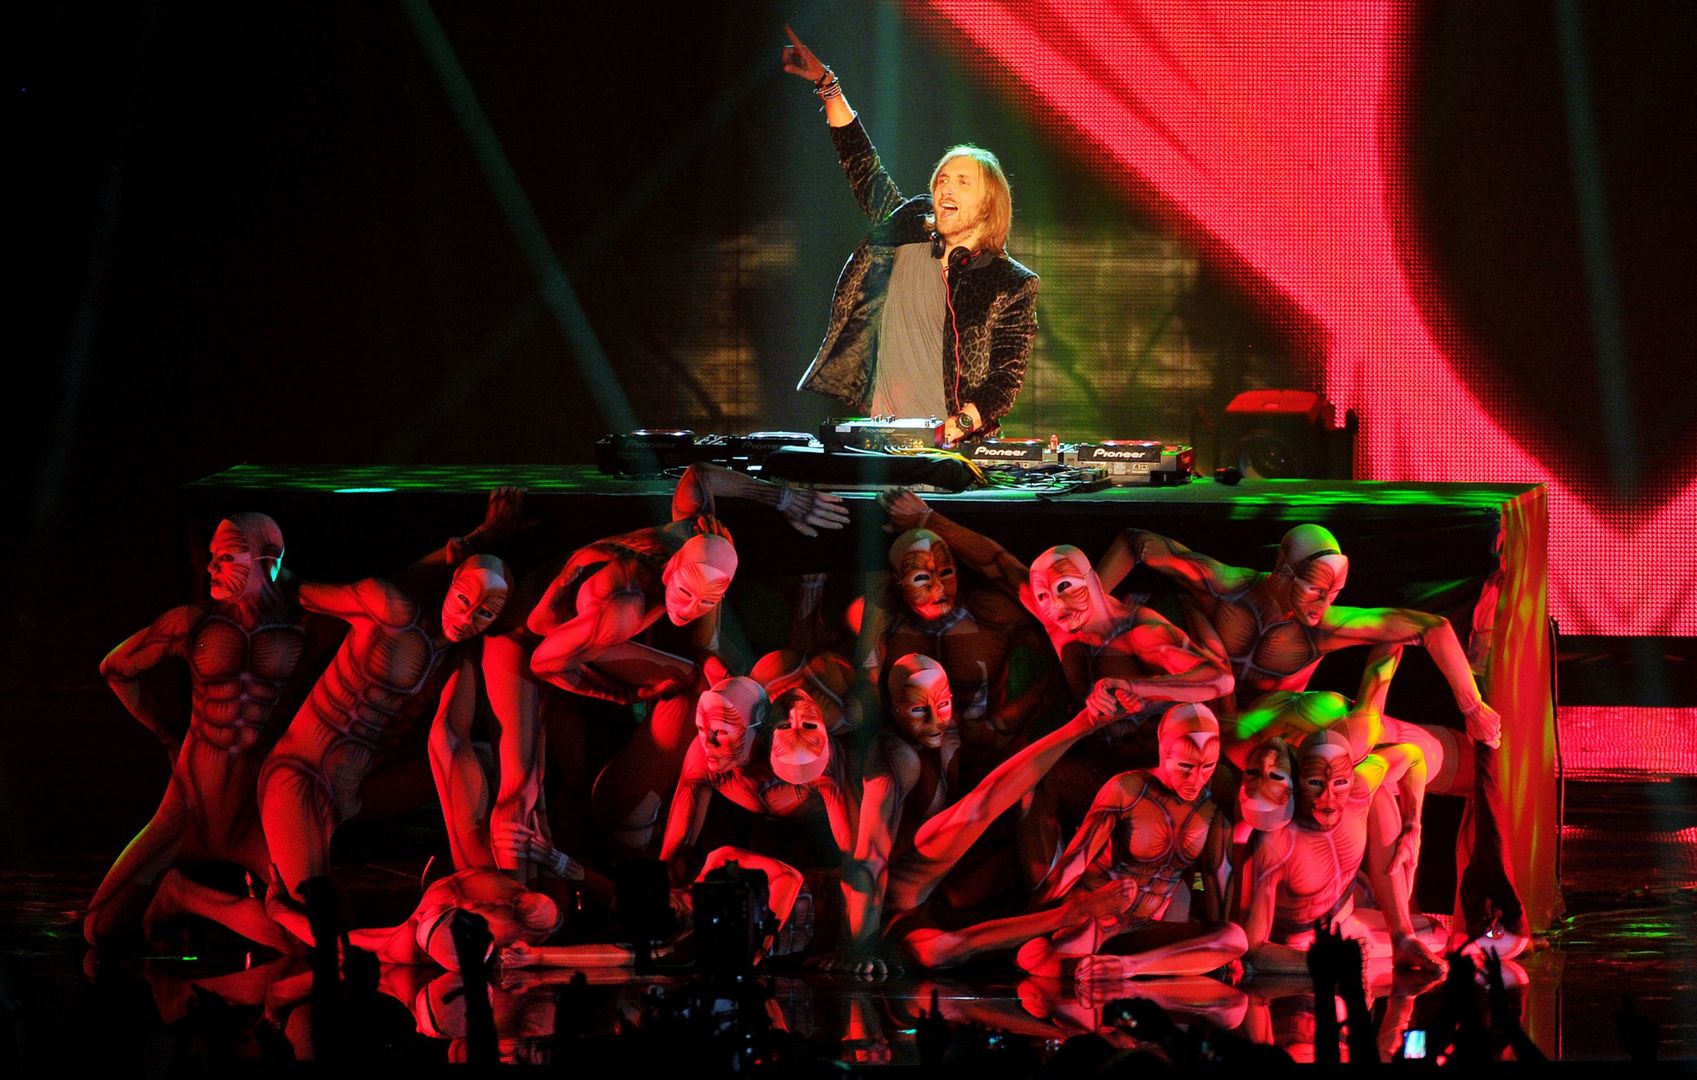 David Guetta: Ikona muzyki elektronicznej - życie, kariera i wpływ